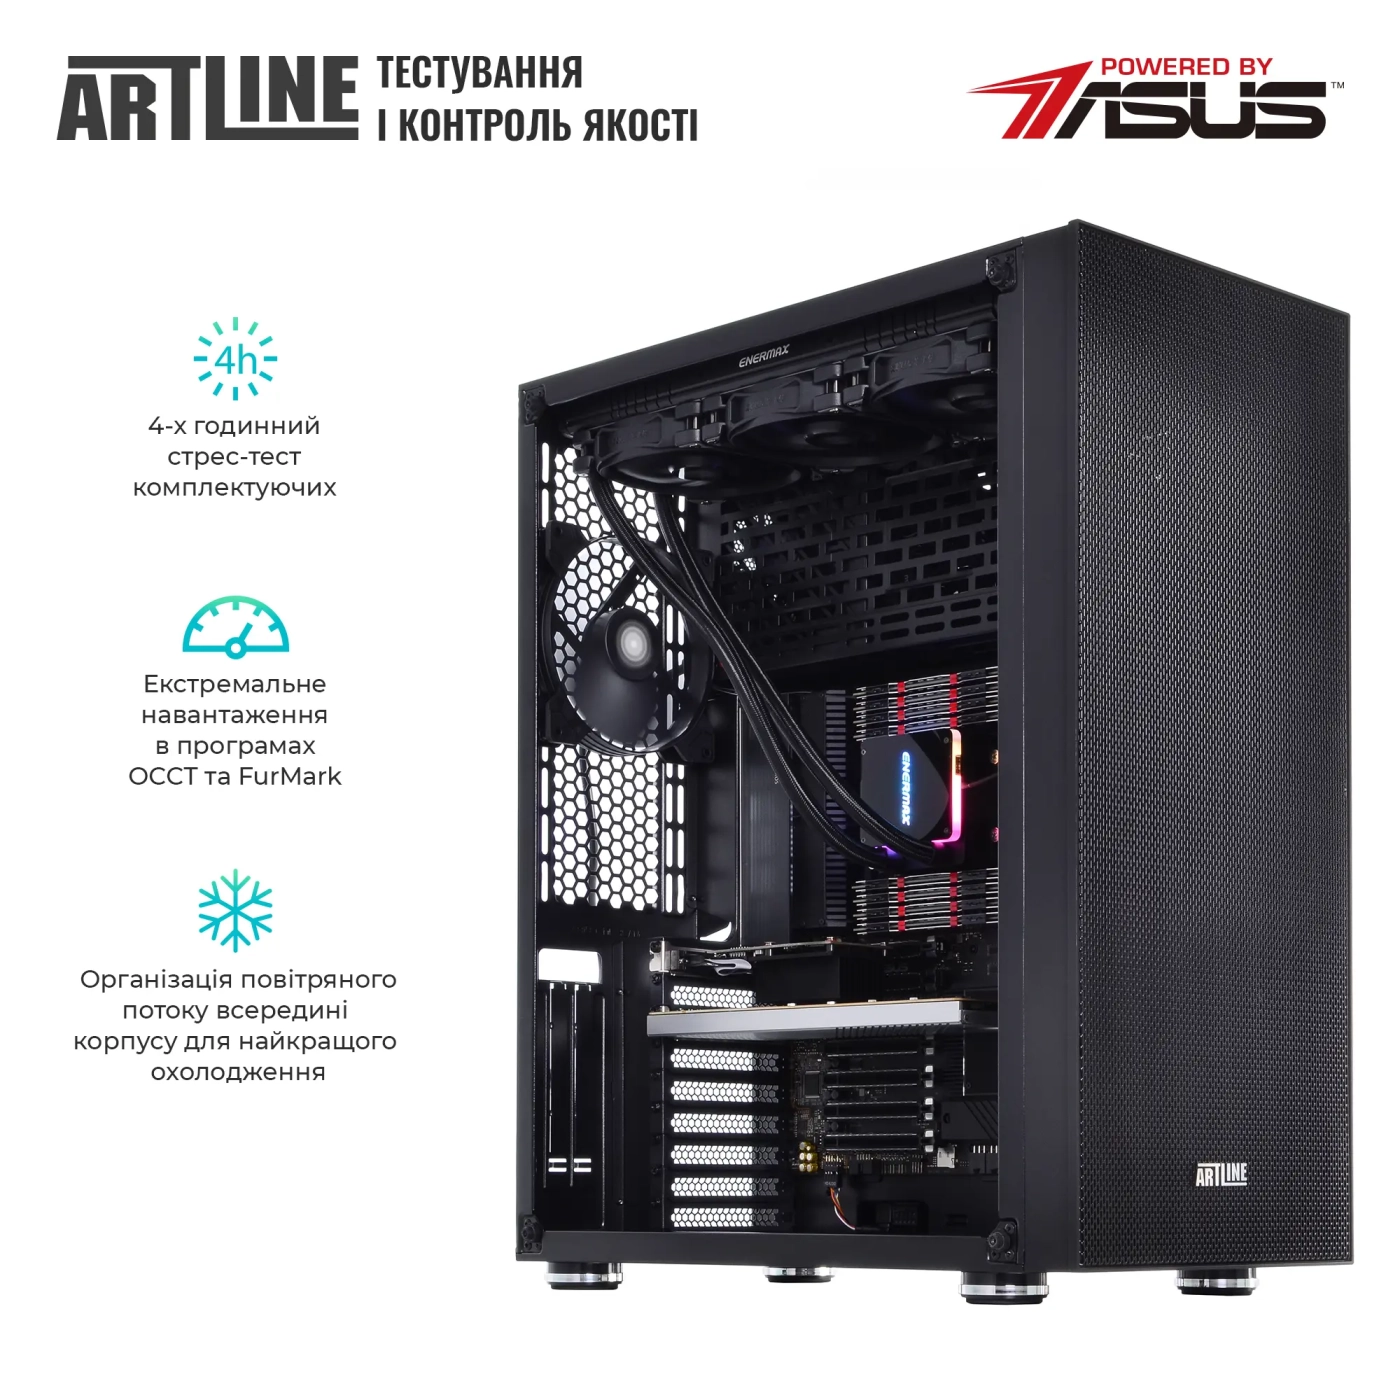 Купить Сервер ARTLINE Business T85v09Win - фото 7